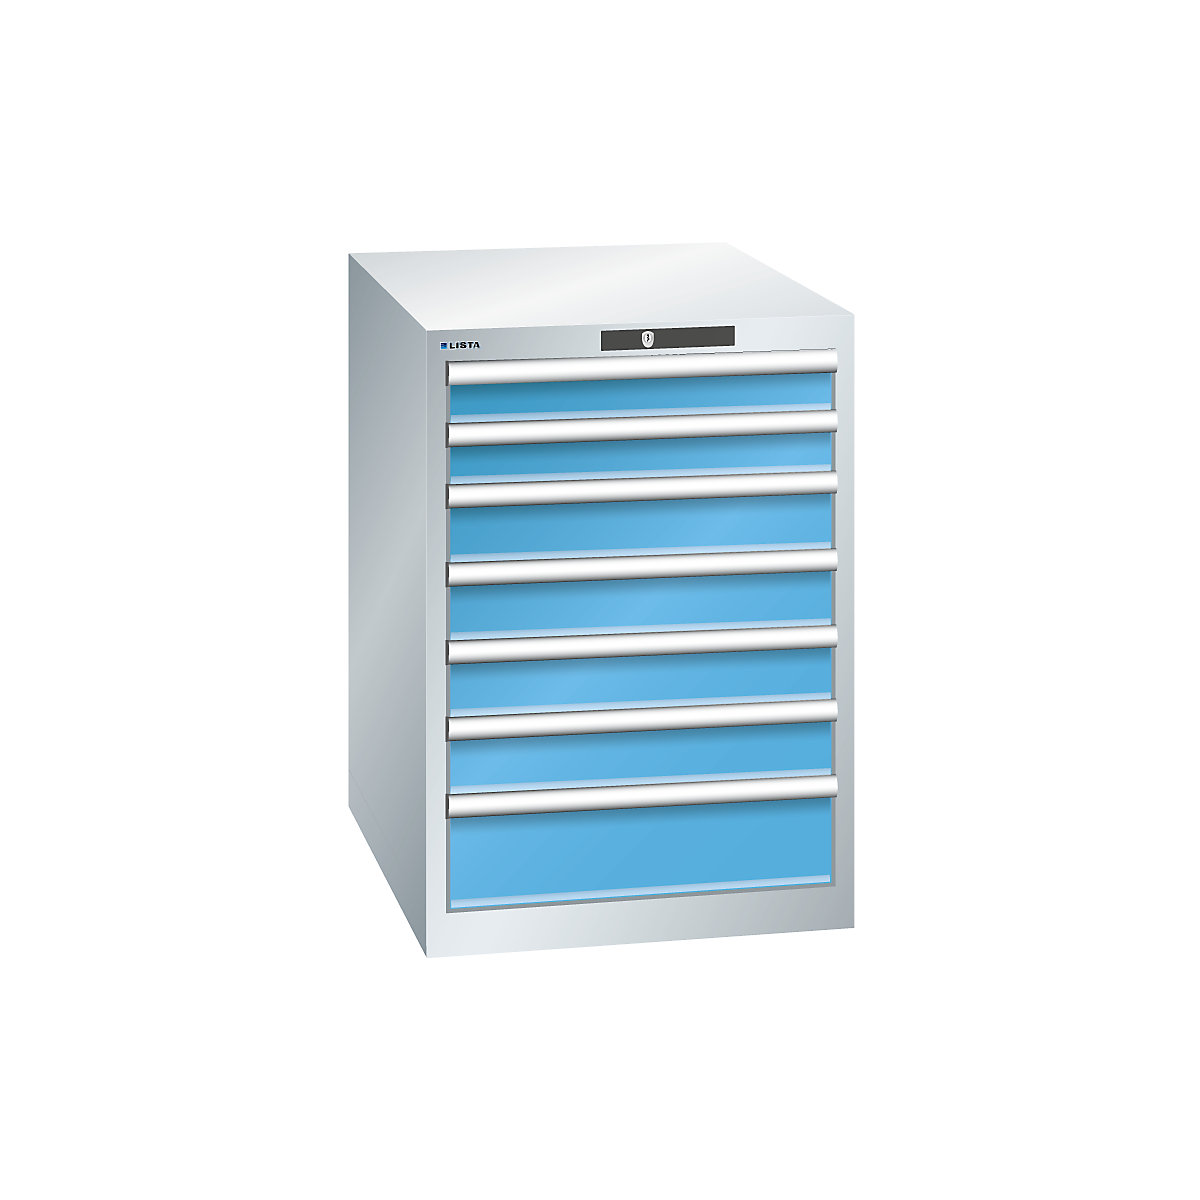 LISTA – Armoire à tiroirs en tôle d'acier, h x l 800 x 564 mm, 7 tiroirs, gris clair / bleu clair